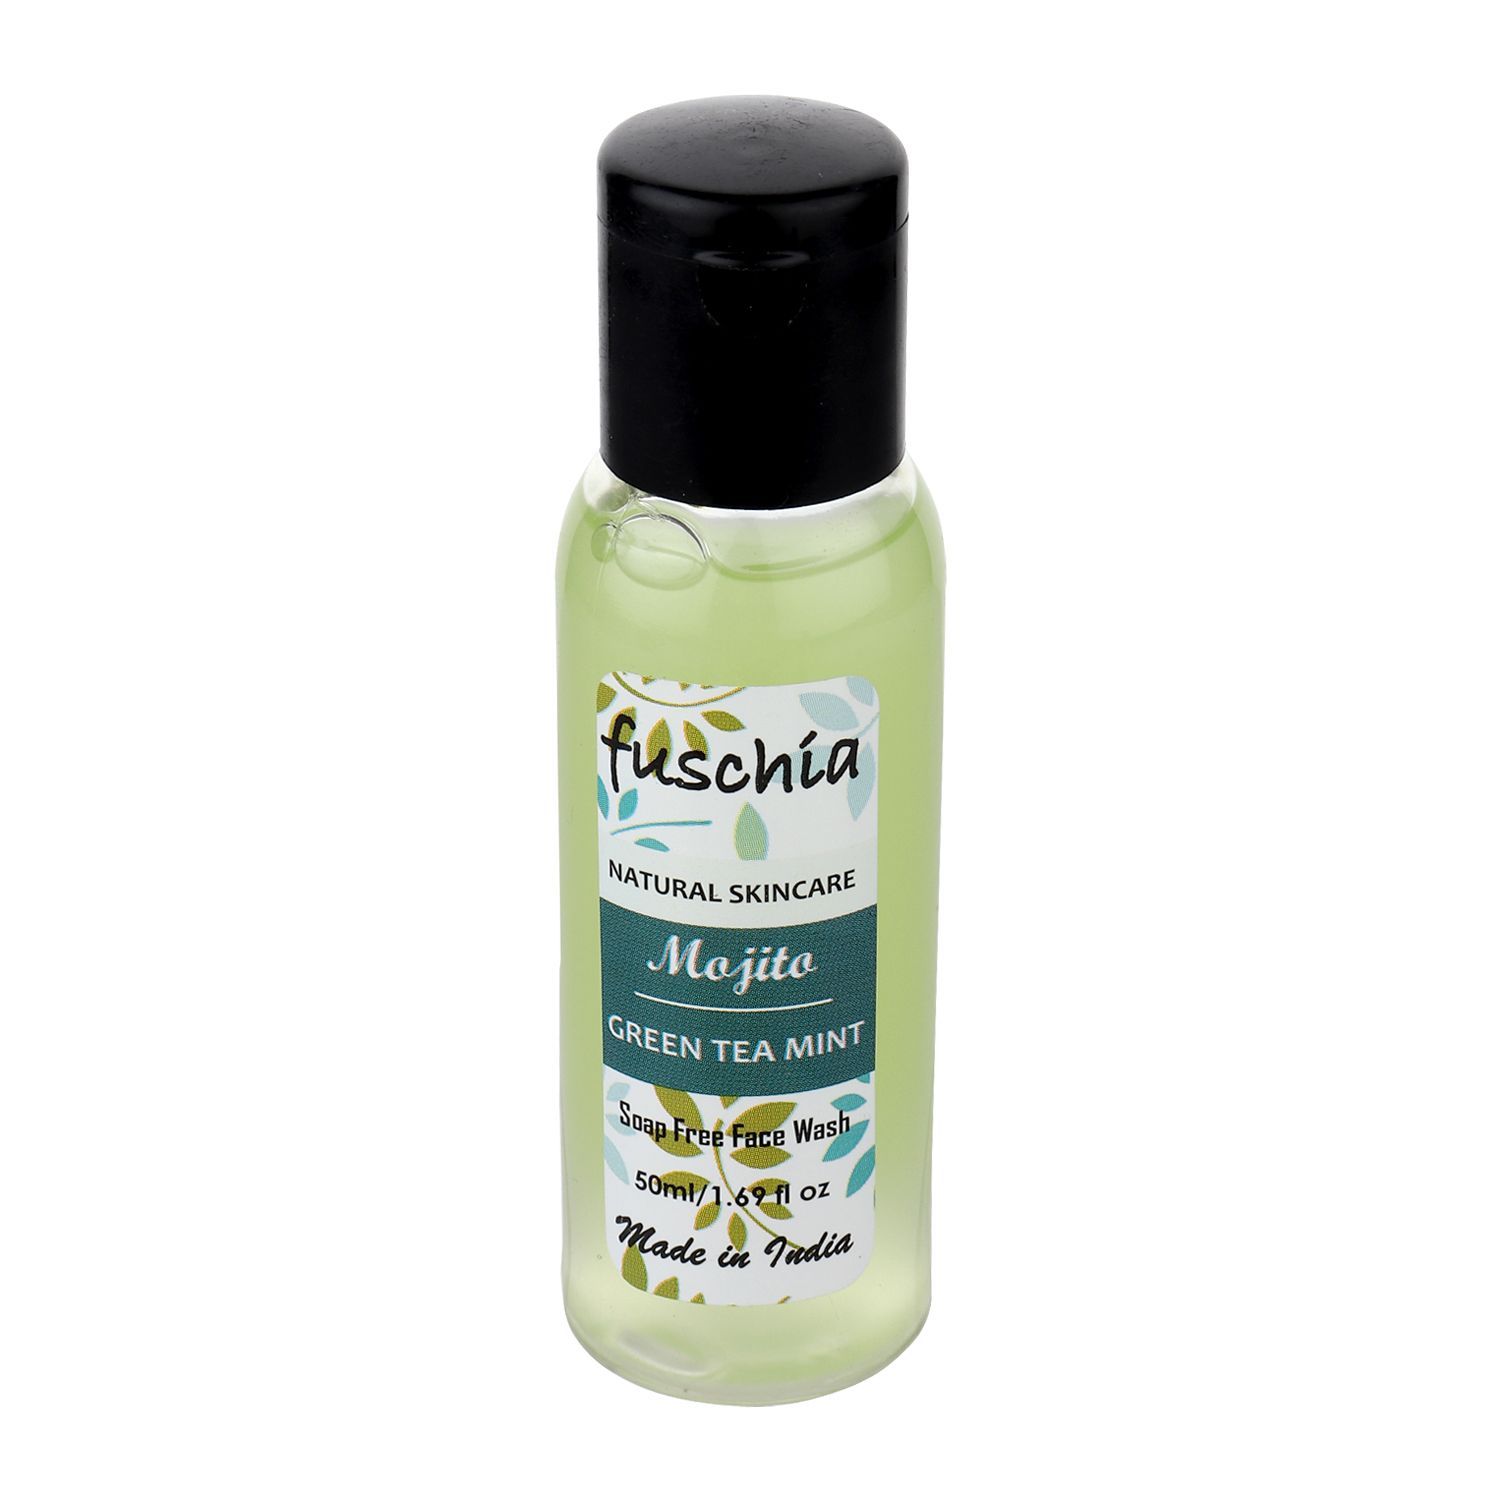 fuschia-mojito-green-tea-mint-soap-free-face-wash-50ml